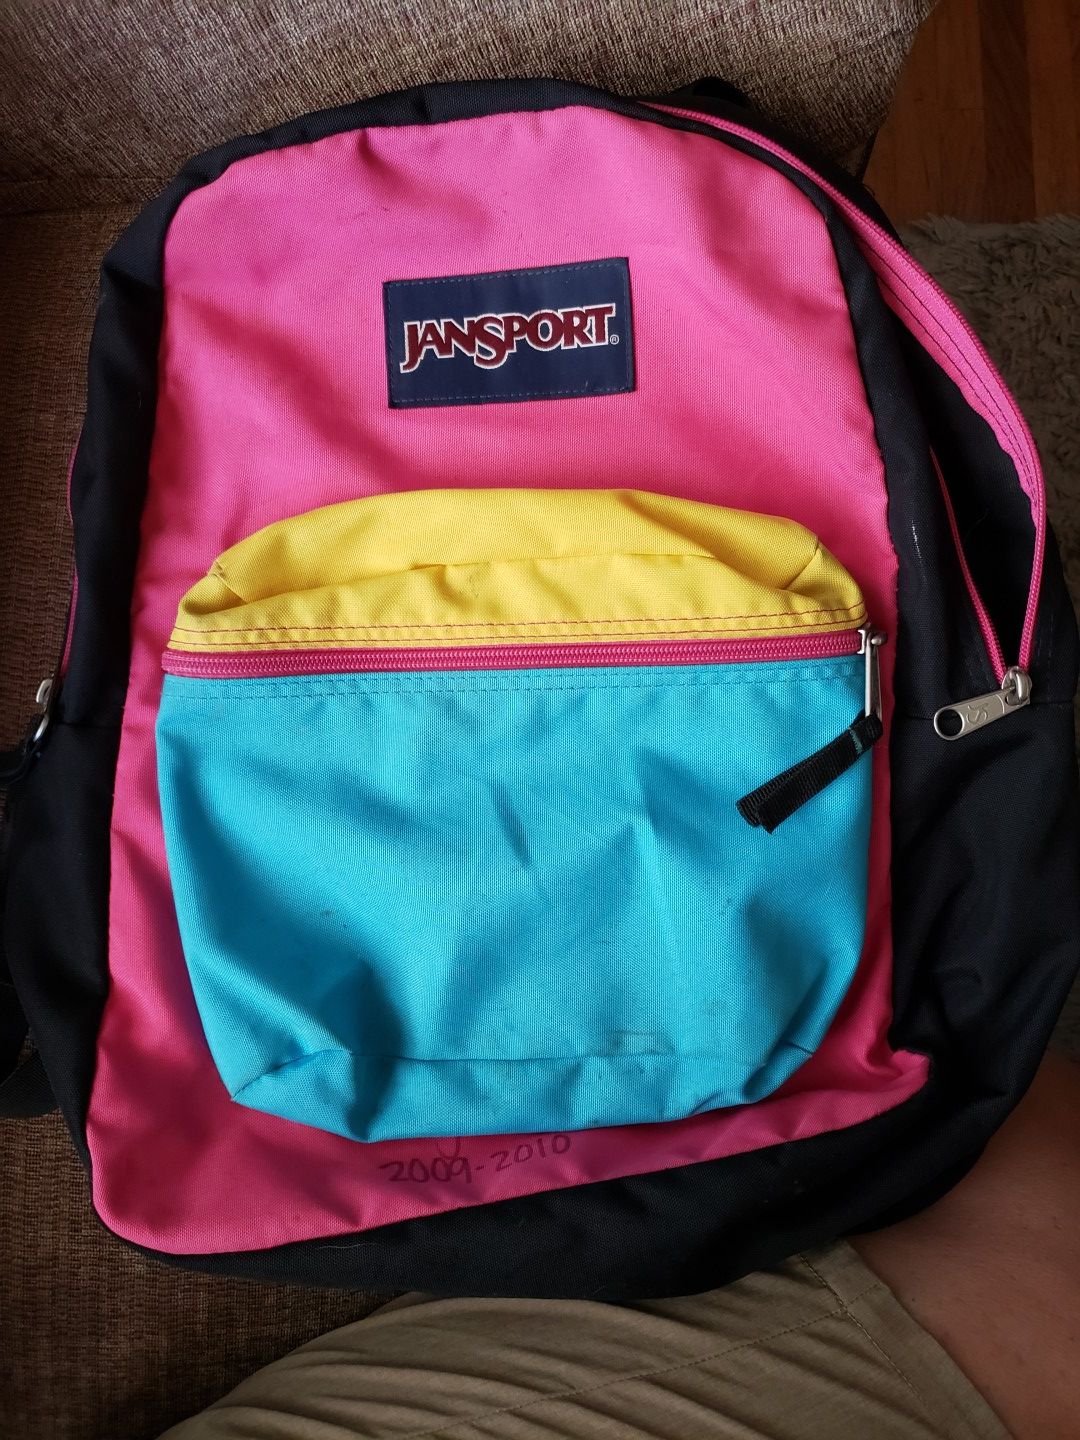 A Jansport Backpack